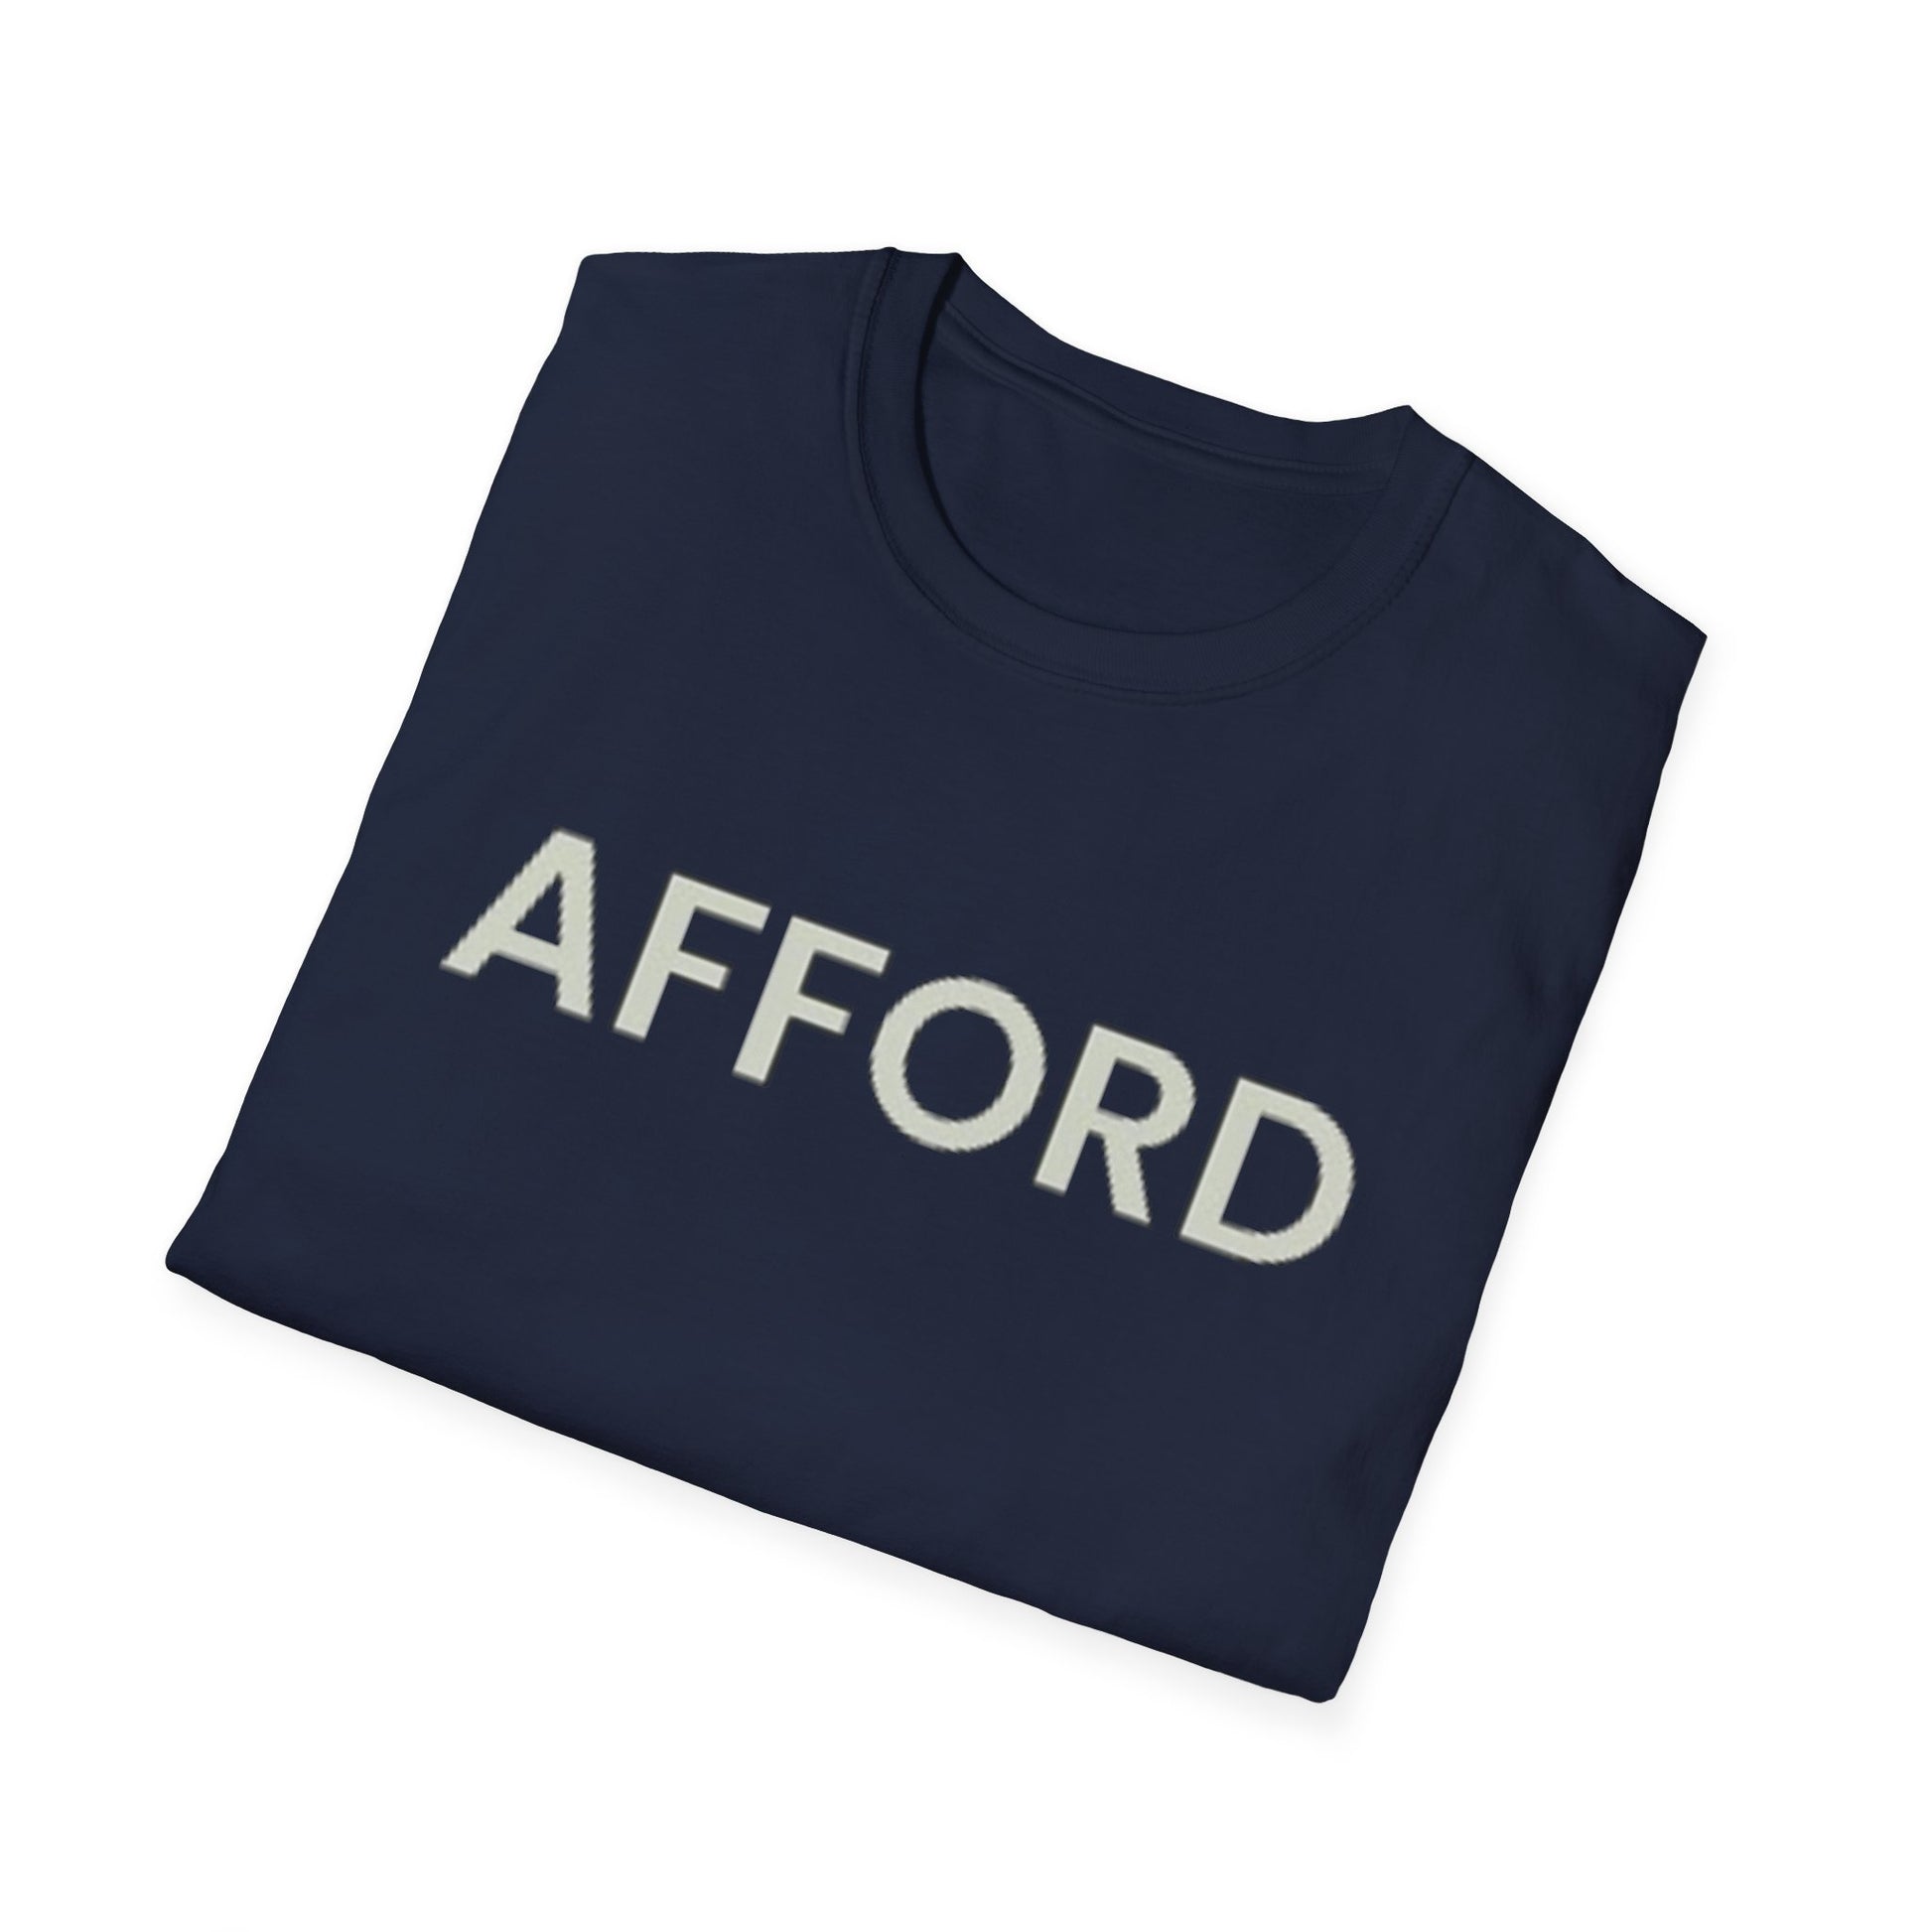 Unisex T-Shirt - AFFORD - AFFORDABLE MARKET